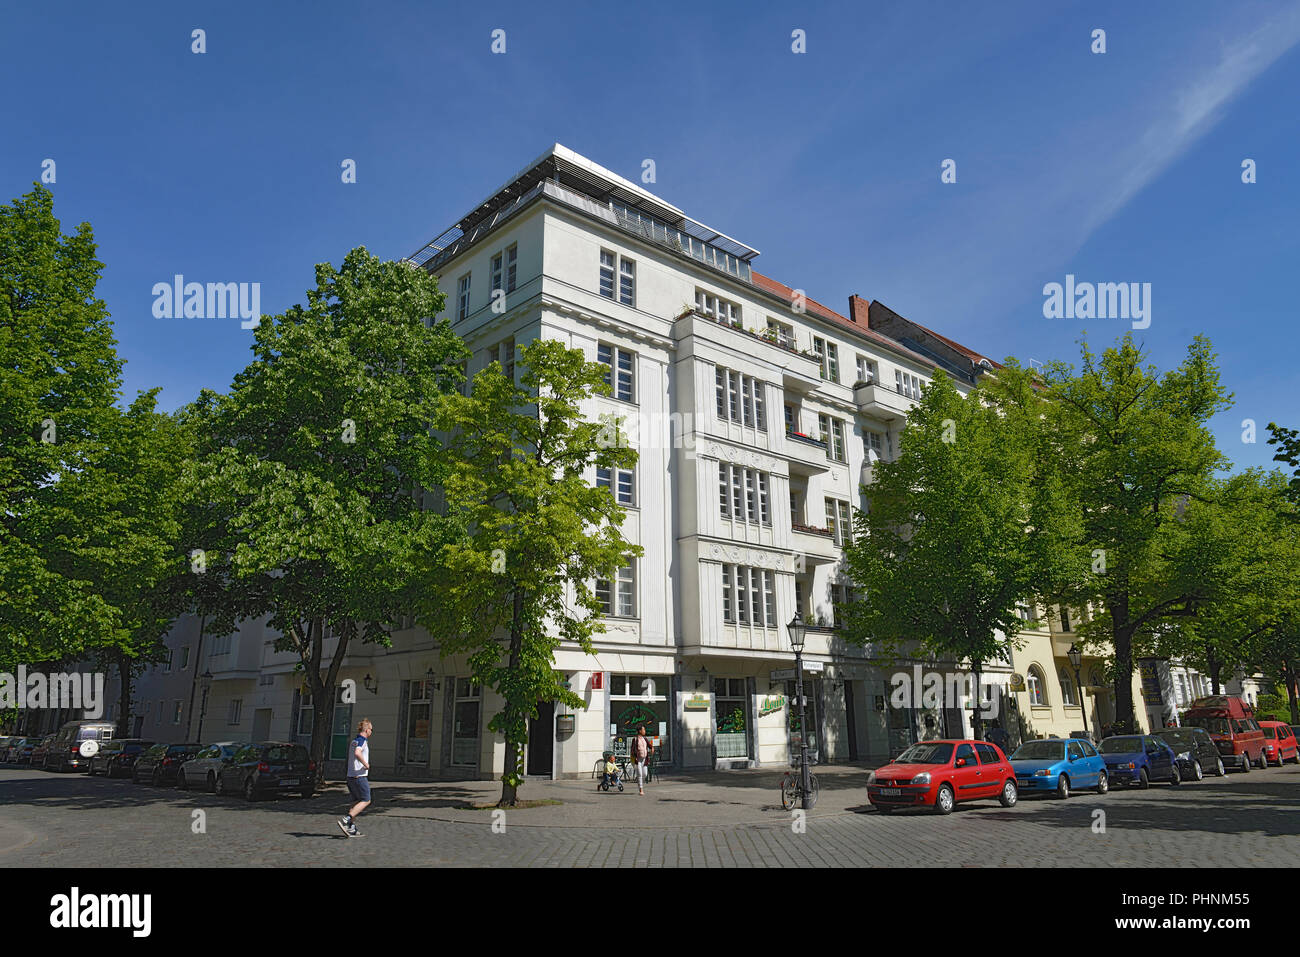 Haeuser, Richardplatz, Boehmisches Viertel, Neukoelln, Berlin, Deutschland Stock Photo